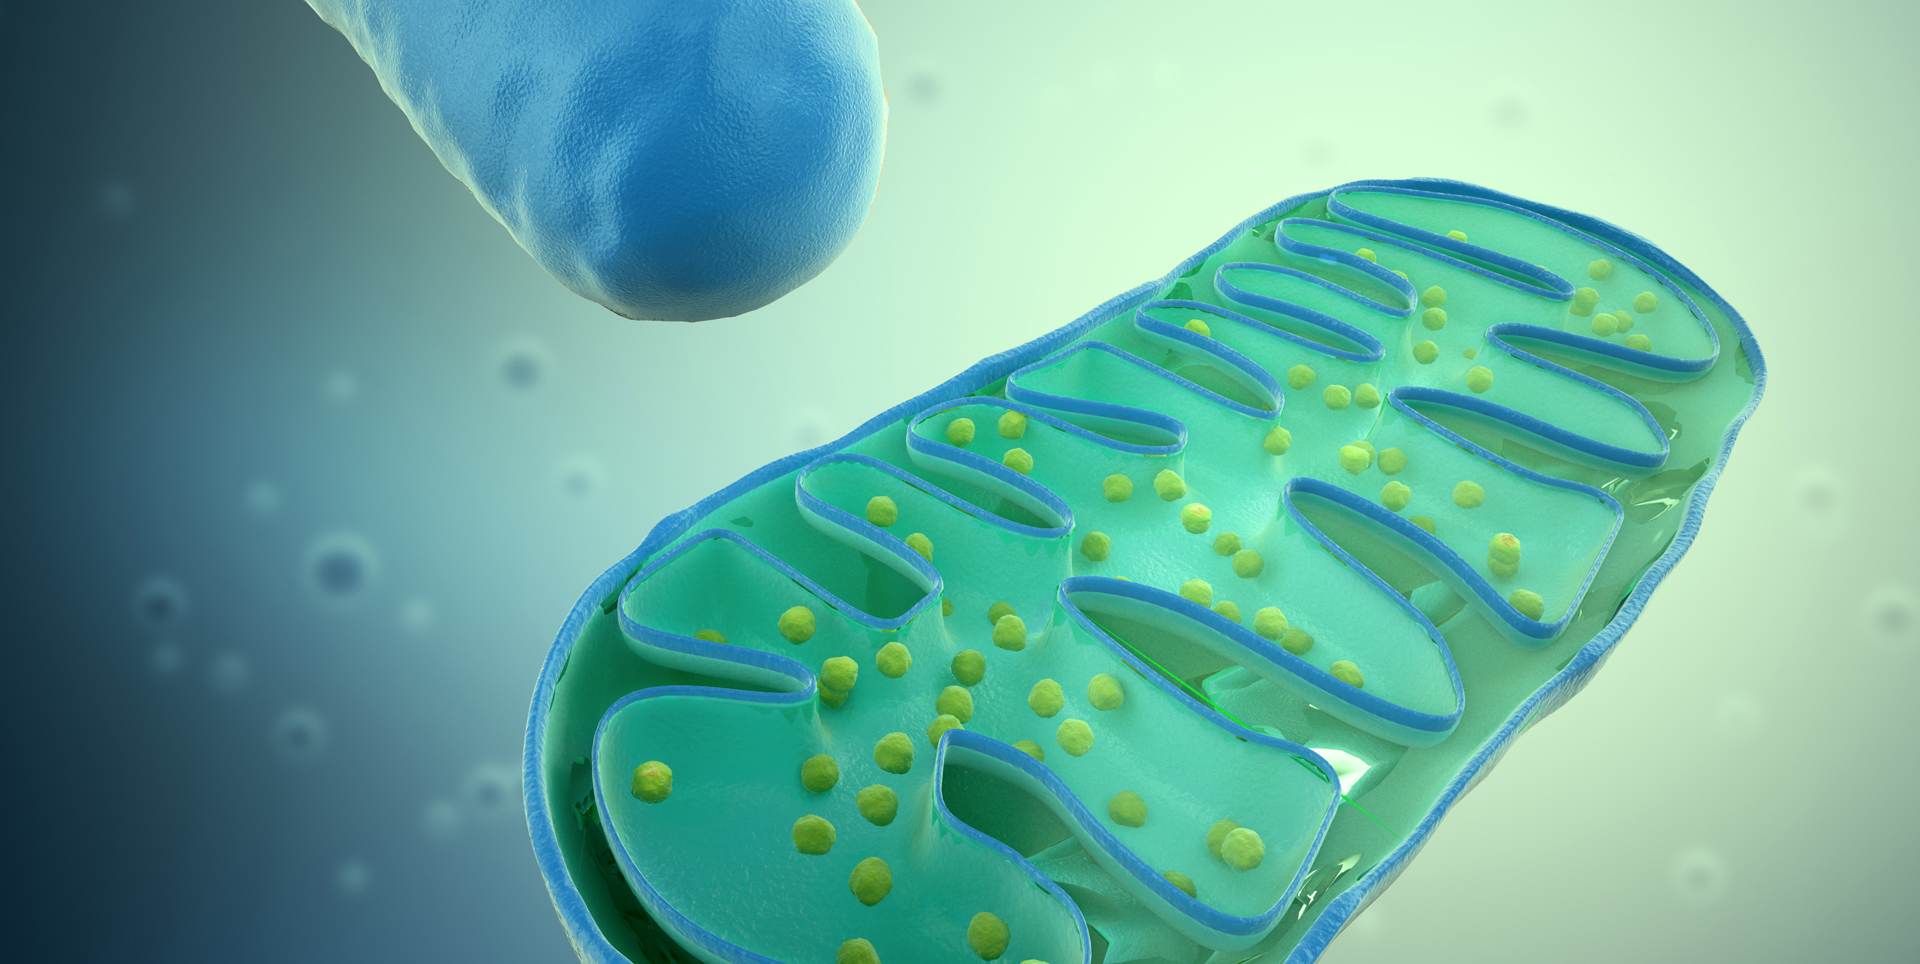 ImmunoMet image of mitochondria